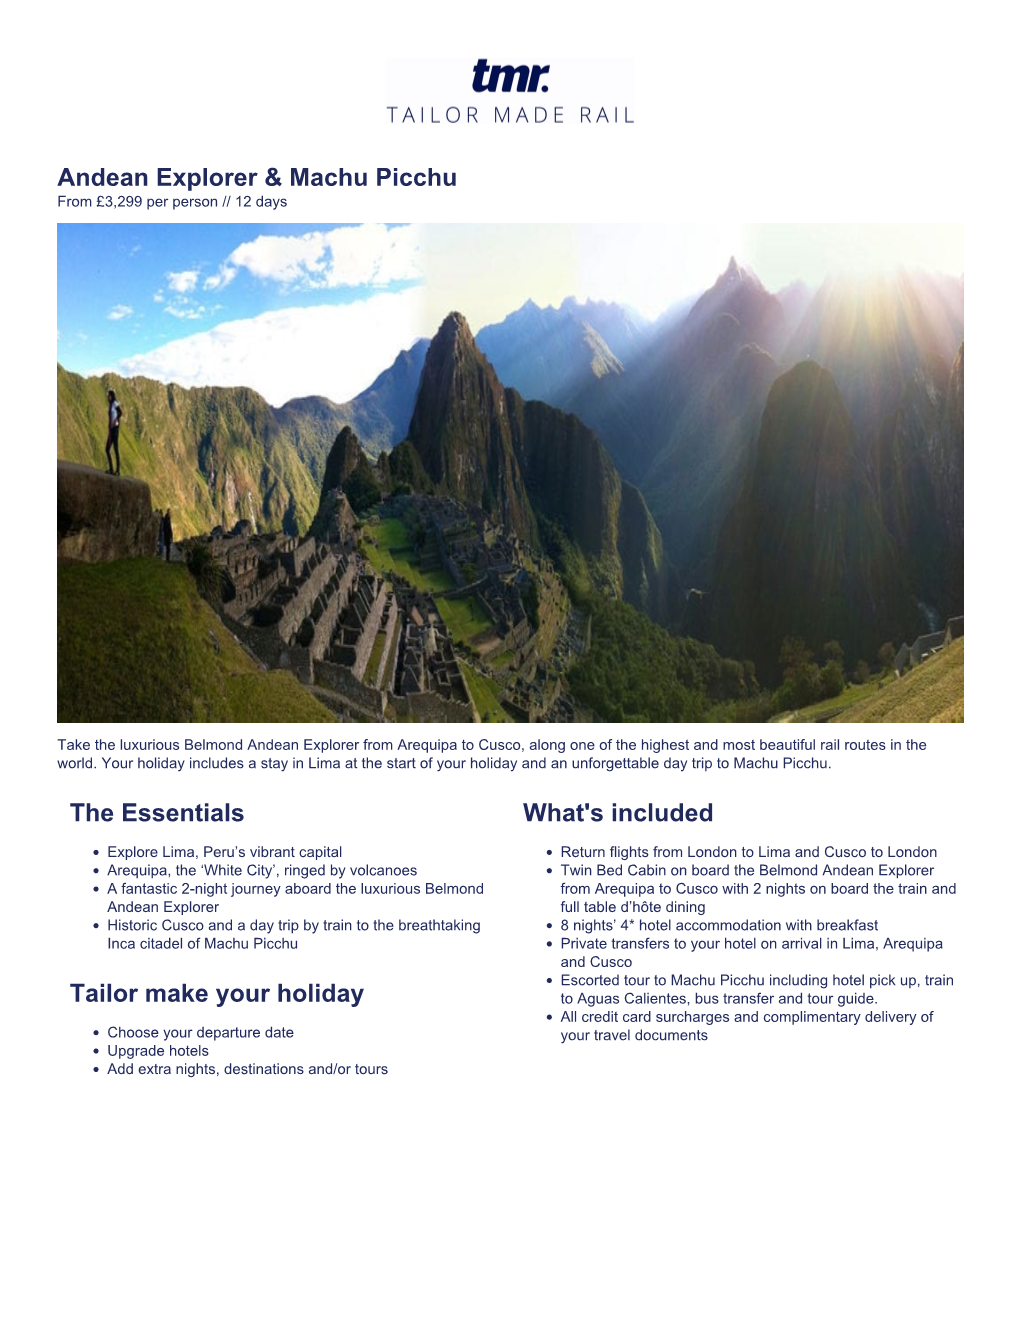 Andean Explorer & Machu Picchu